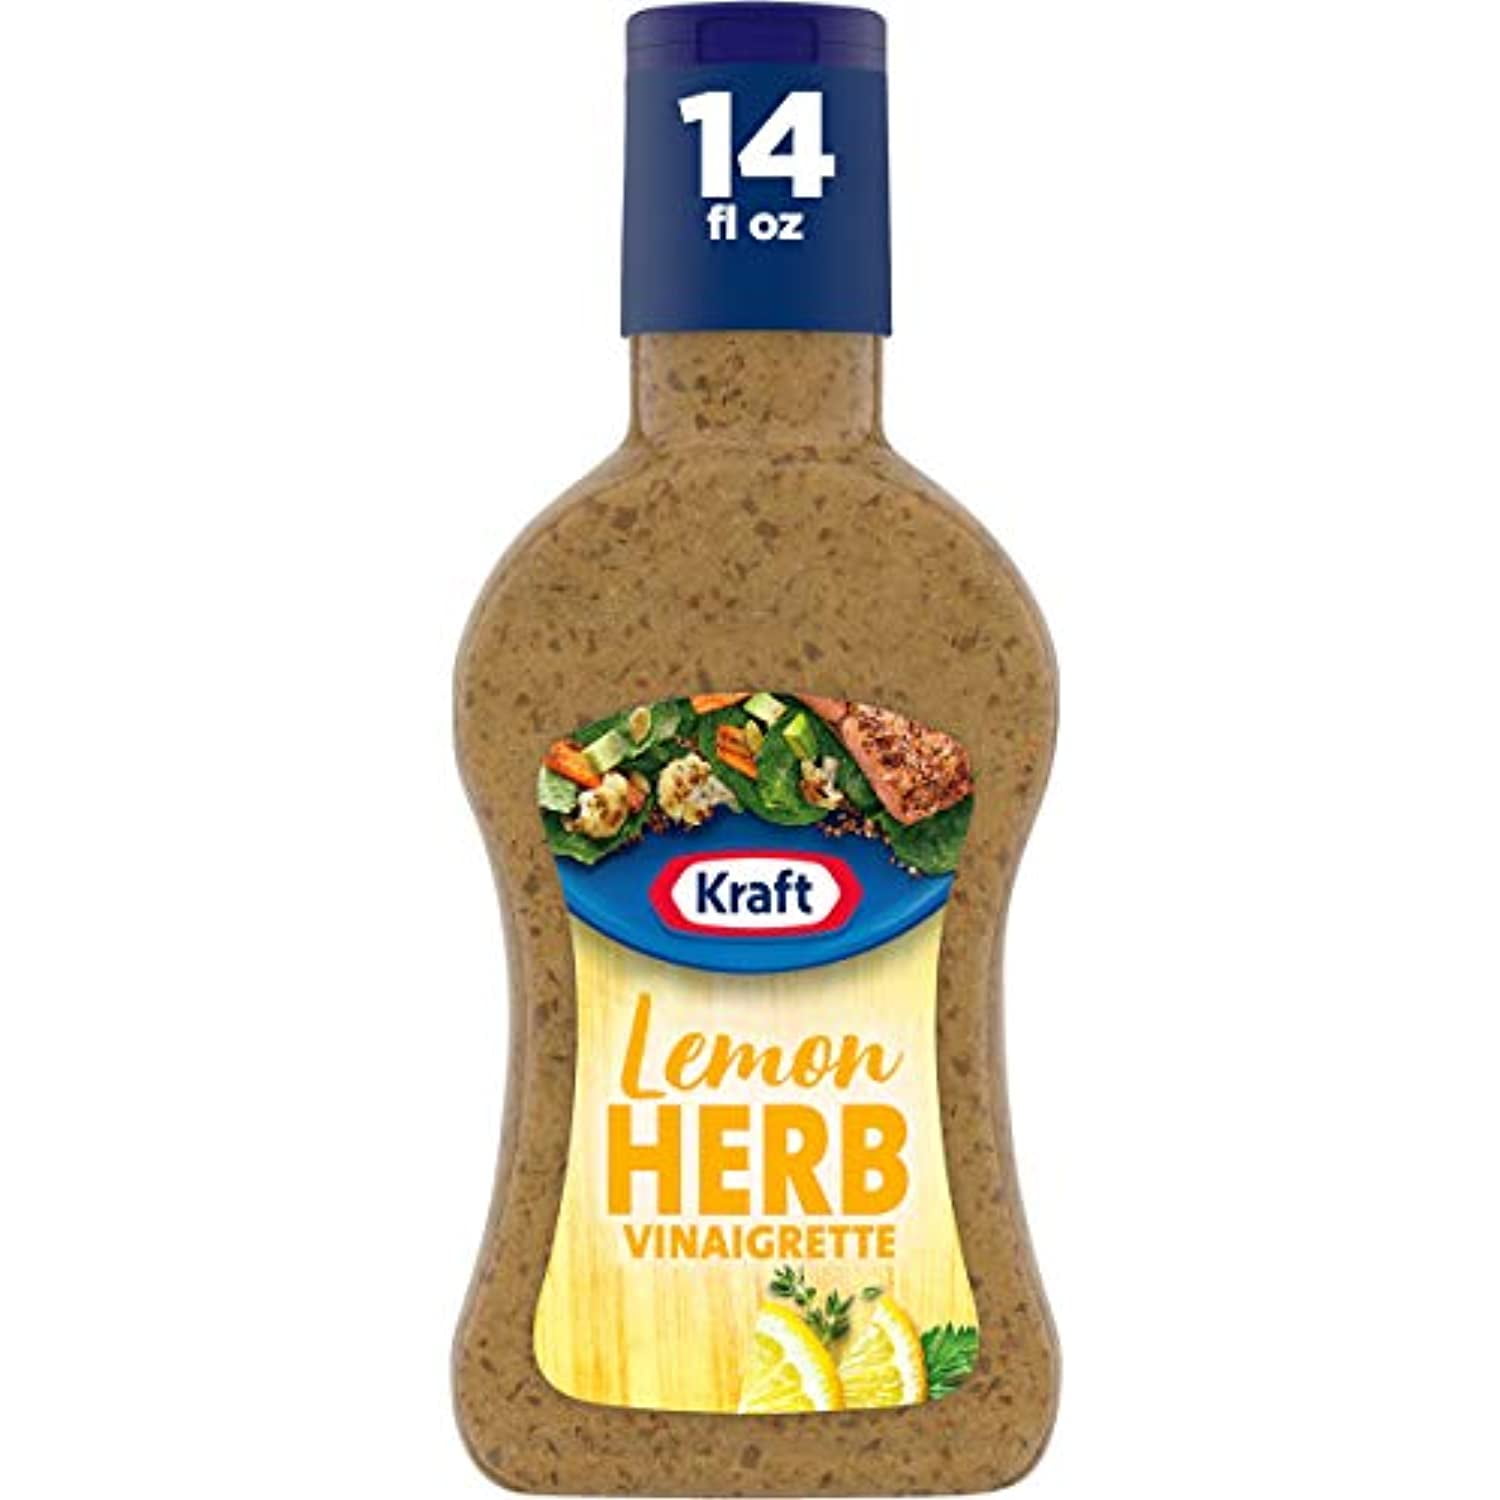 Kraft Lemon Herb Vinaigrette Salad Dressing (14 Fl Oz Bottle) - Walmart.com